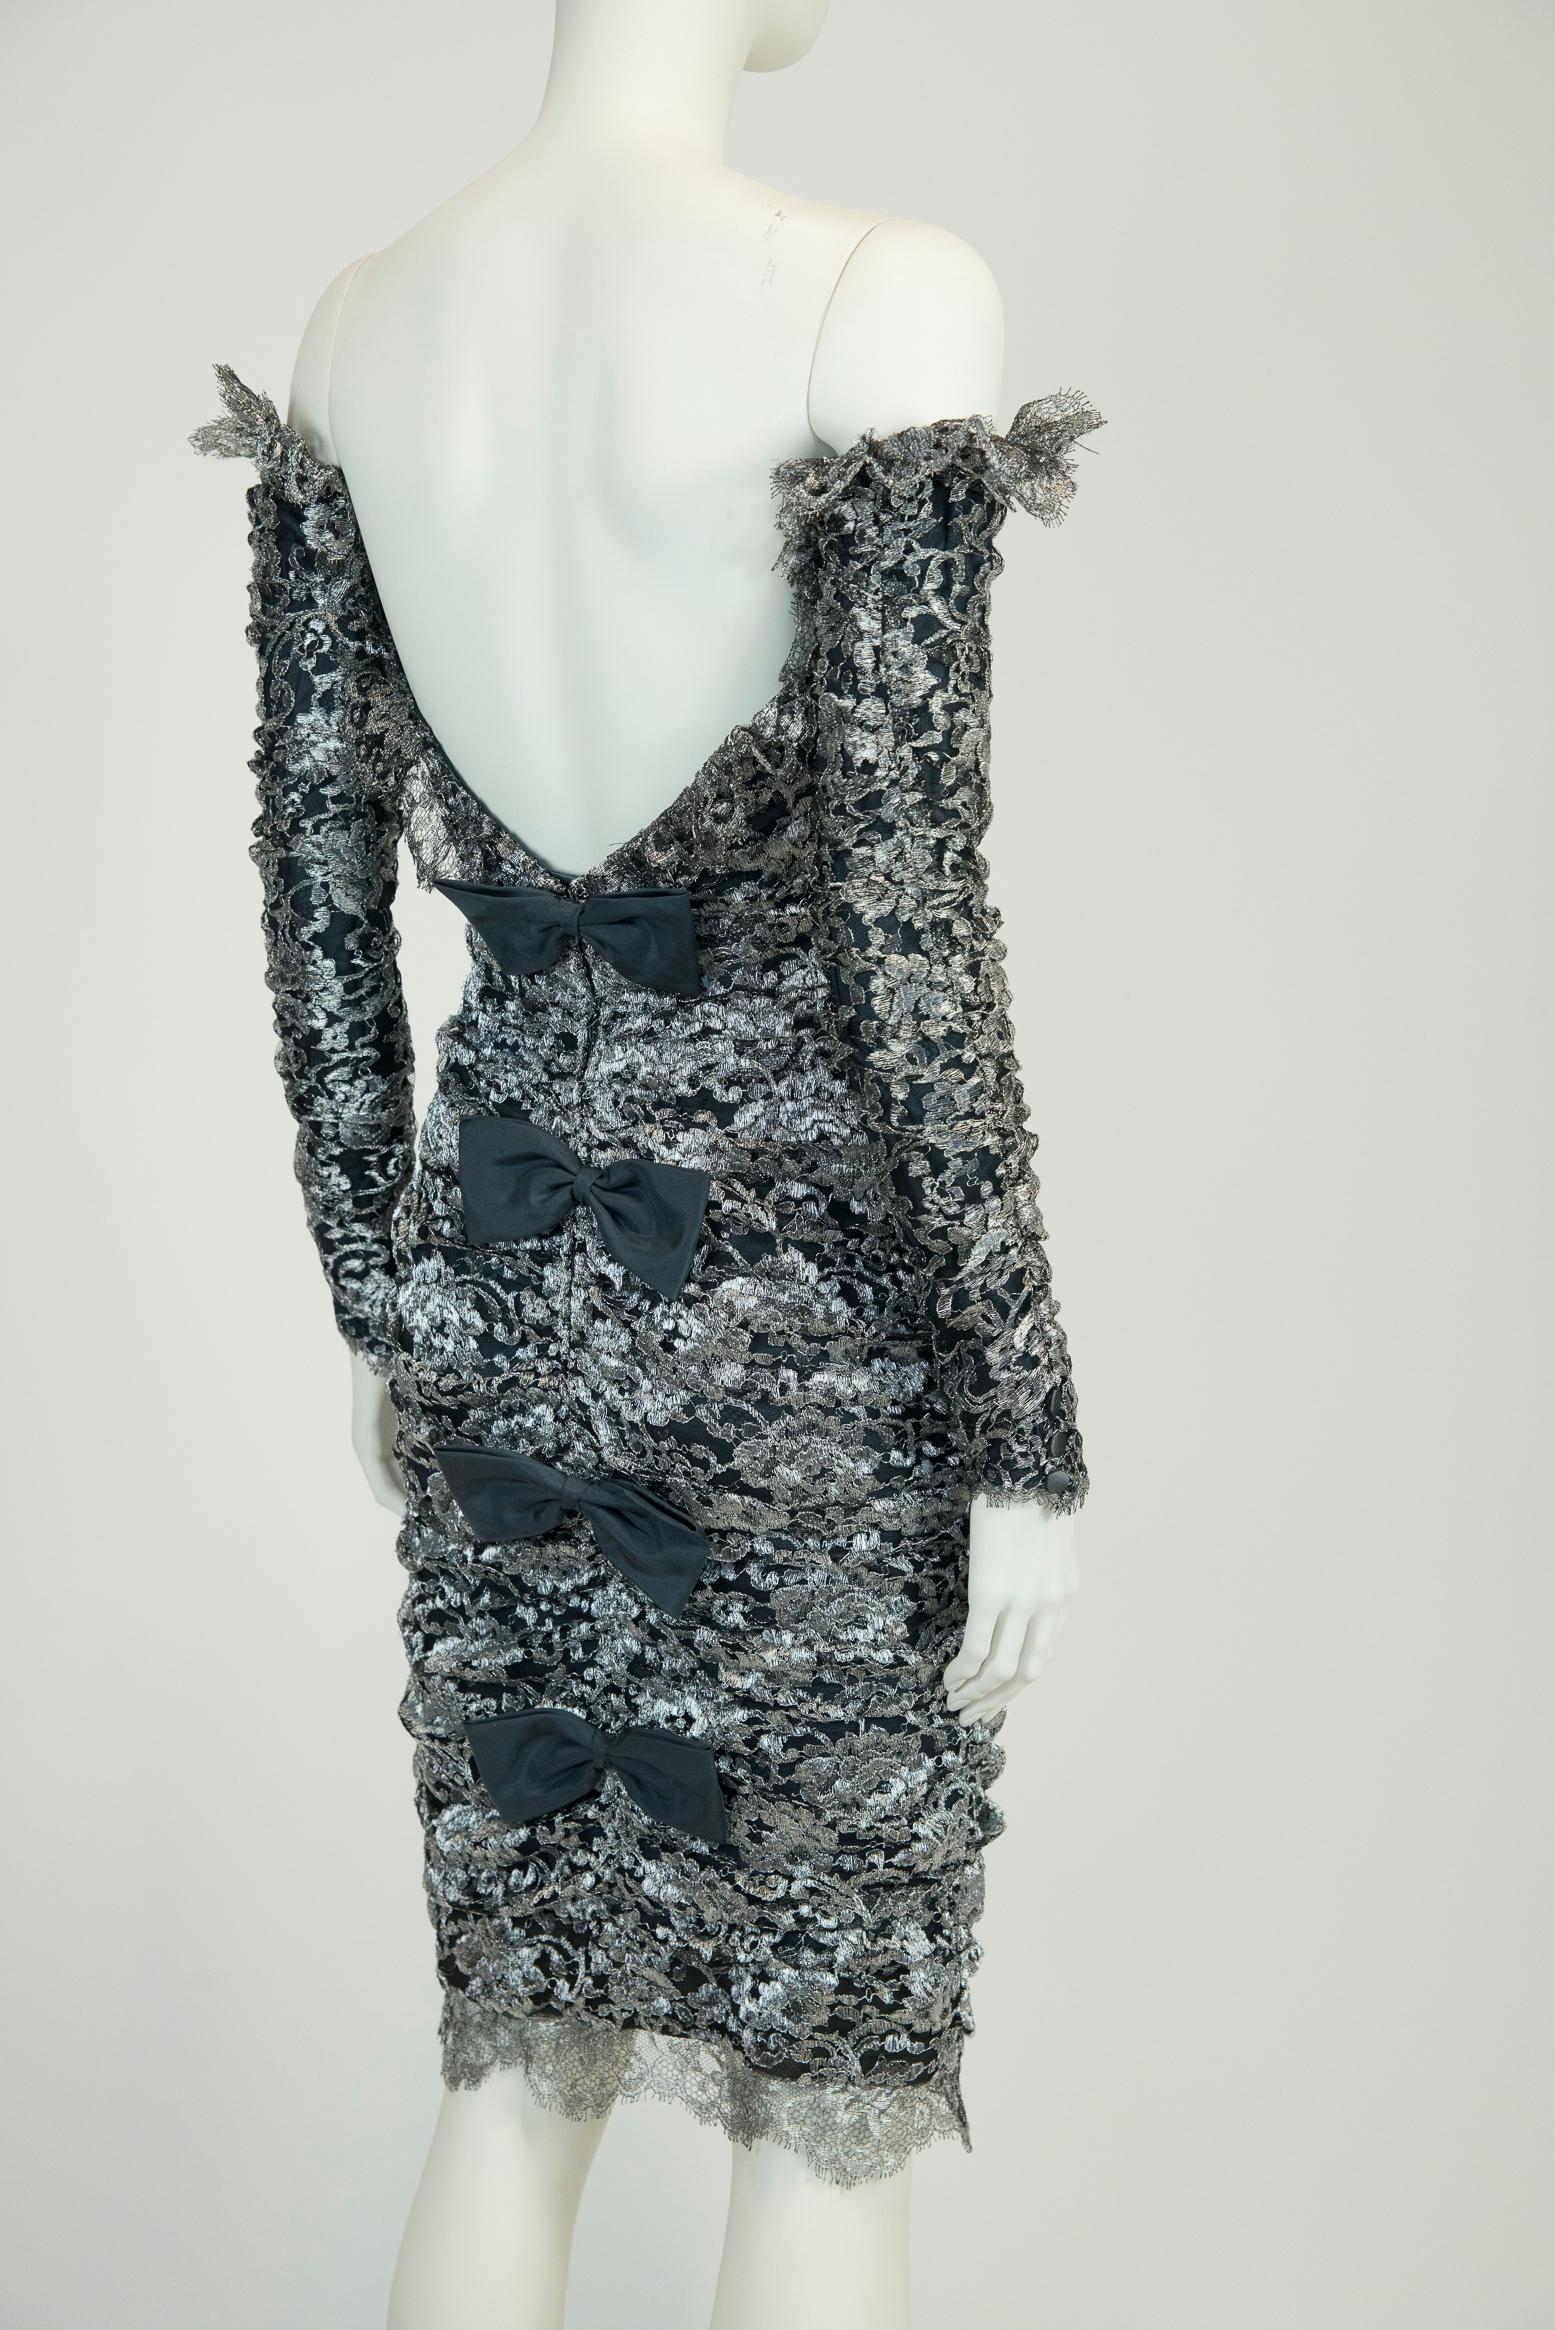 Conçue par la créatrice française Isabelle Allard, cette robe de soirée des années 80 vous donnera envie de faire la fête !
Confectionnée en dentelle argentée métallisée froncée sur toute sa longueur pour souligner la coupe près du corps et apporter